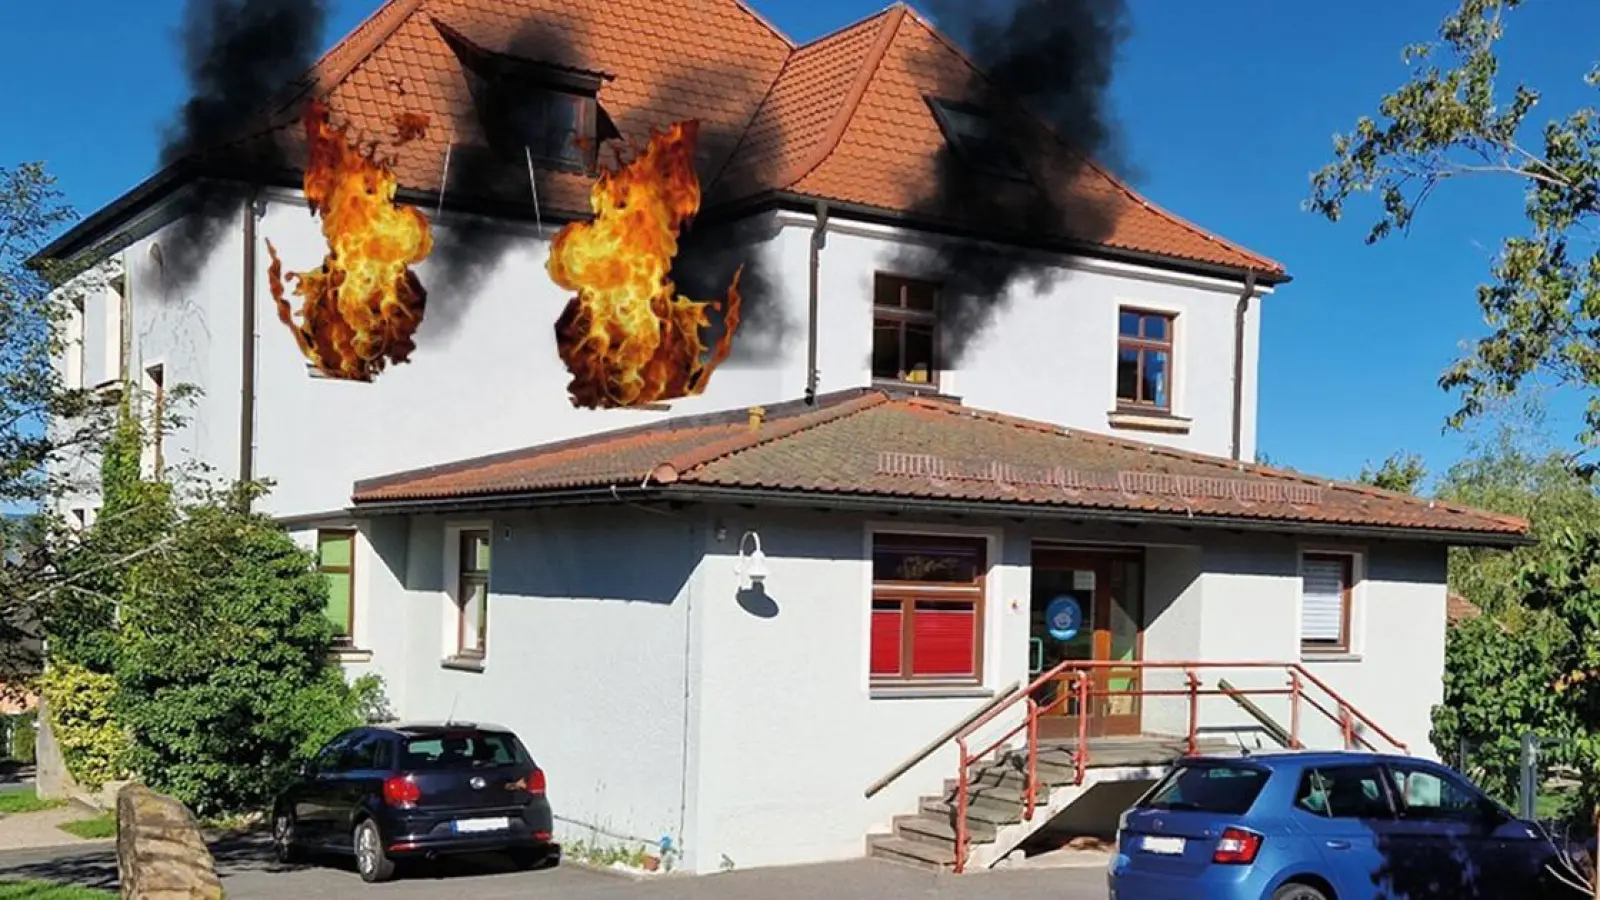 Zum Glück nicht real, sondern der eine Fotomontage: Der brennende Kindergarten in Unternschreez. (Foto: Fotomontage: Gerhard Eichmüller)